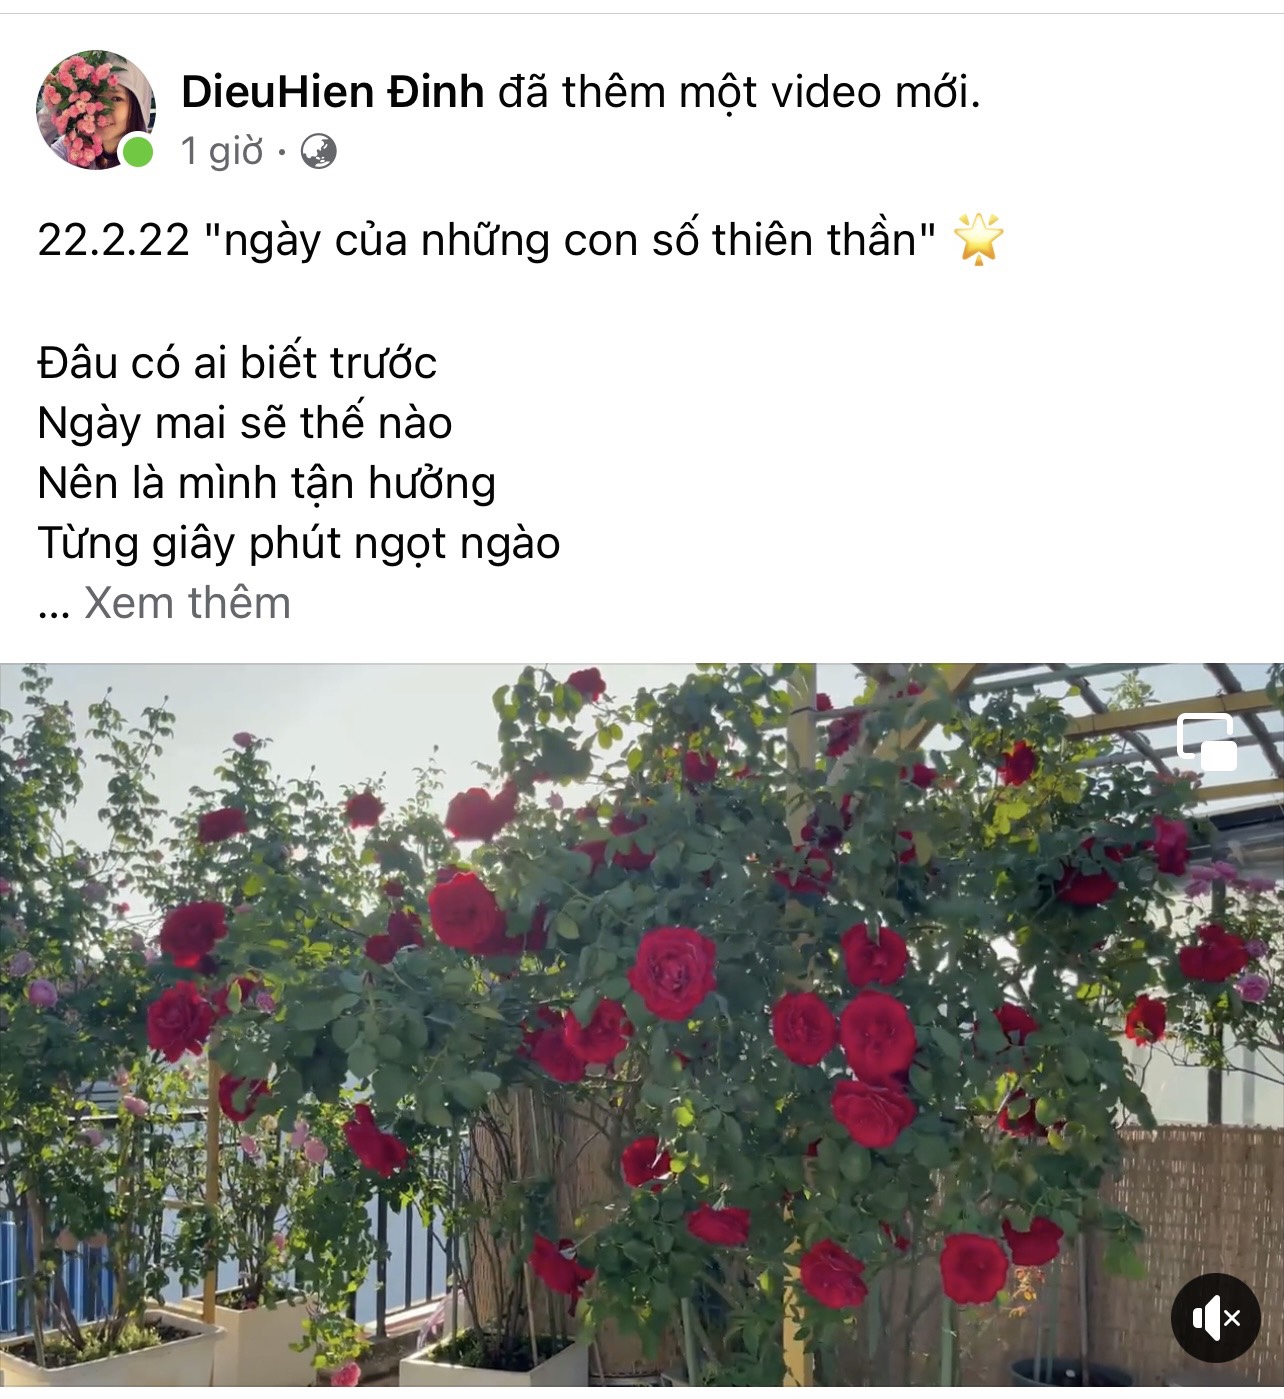 Chị Hiền đăng tải những hình ảnh về vườn hoa hồng tuyệt đẹp để lan tỏa nguồn năng lượng tích cực trong ngày đặc biệt này